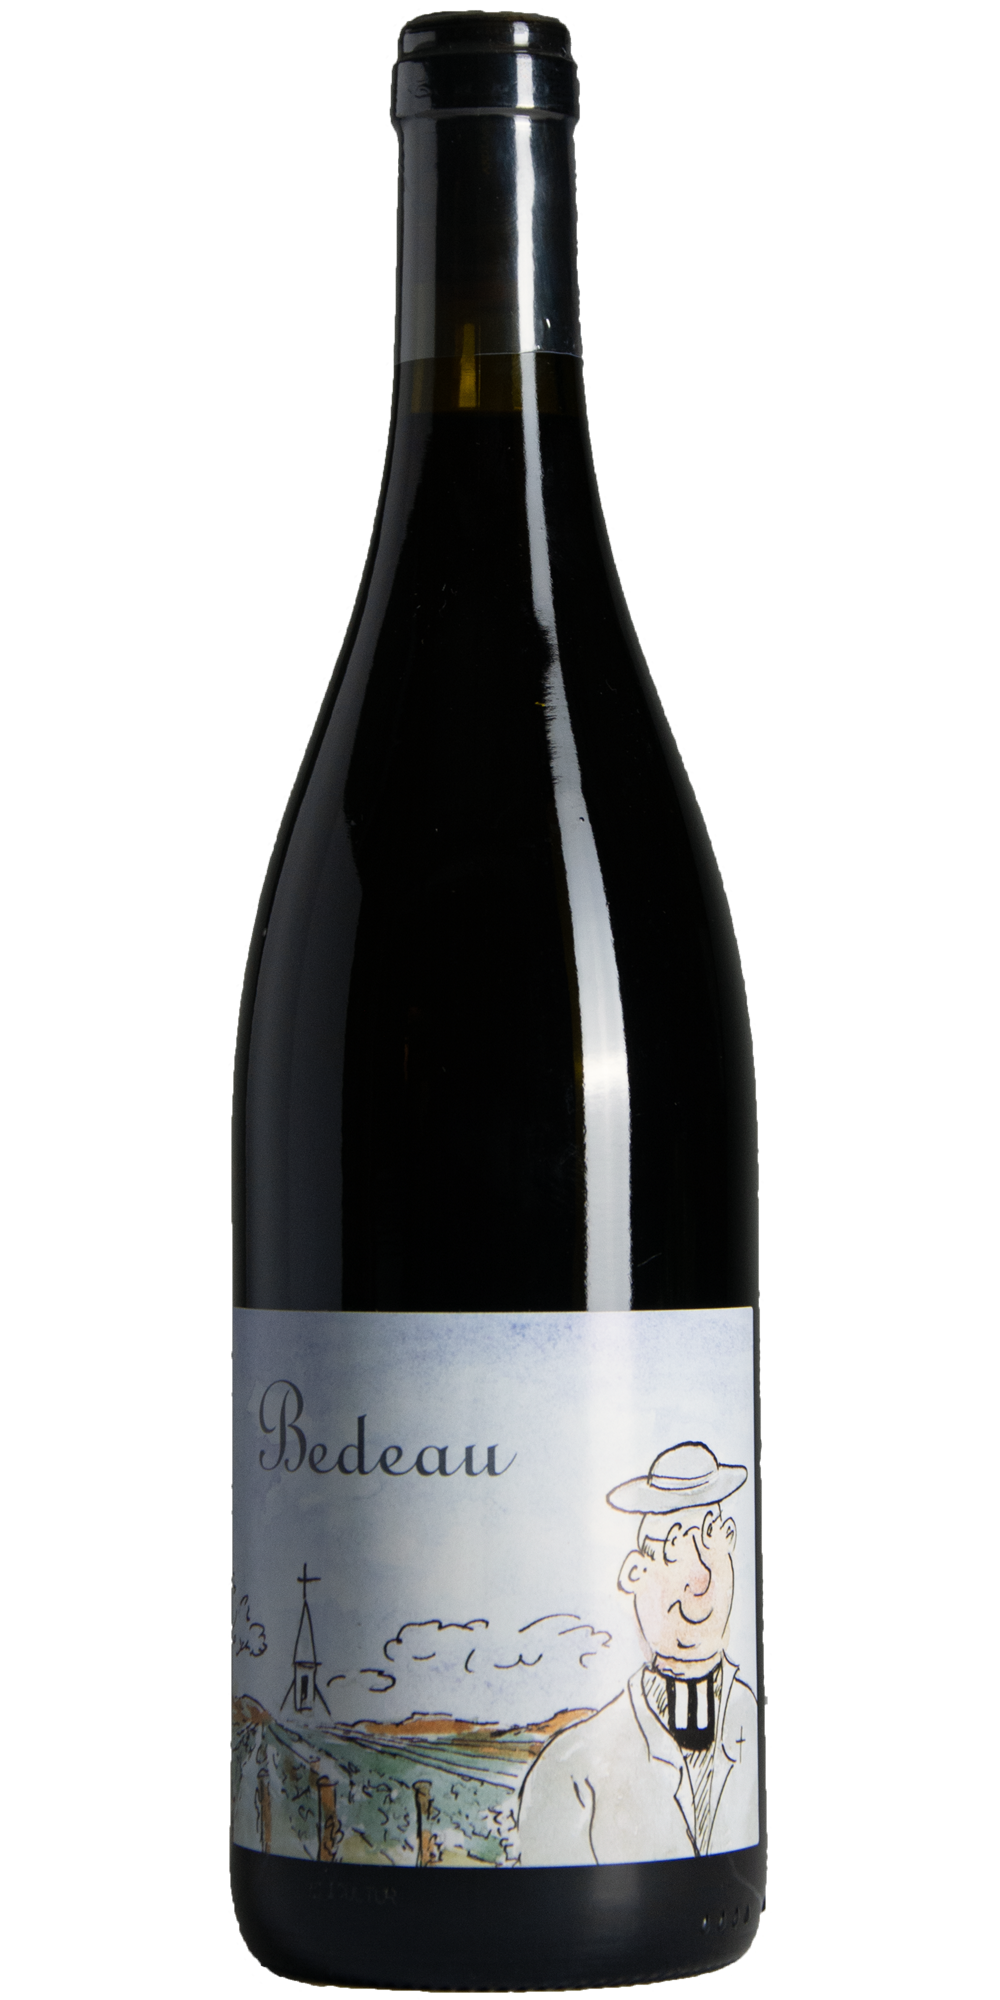 2021 Bourgogne rouge Bedeau